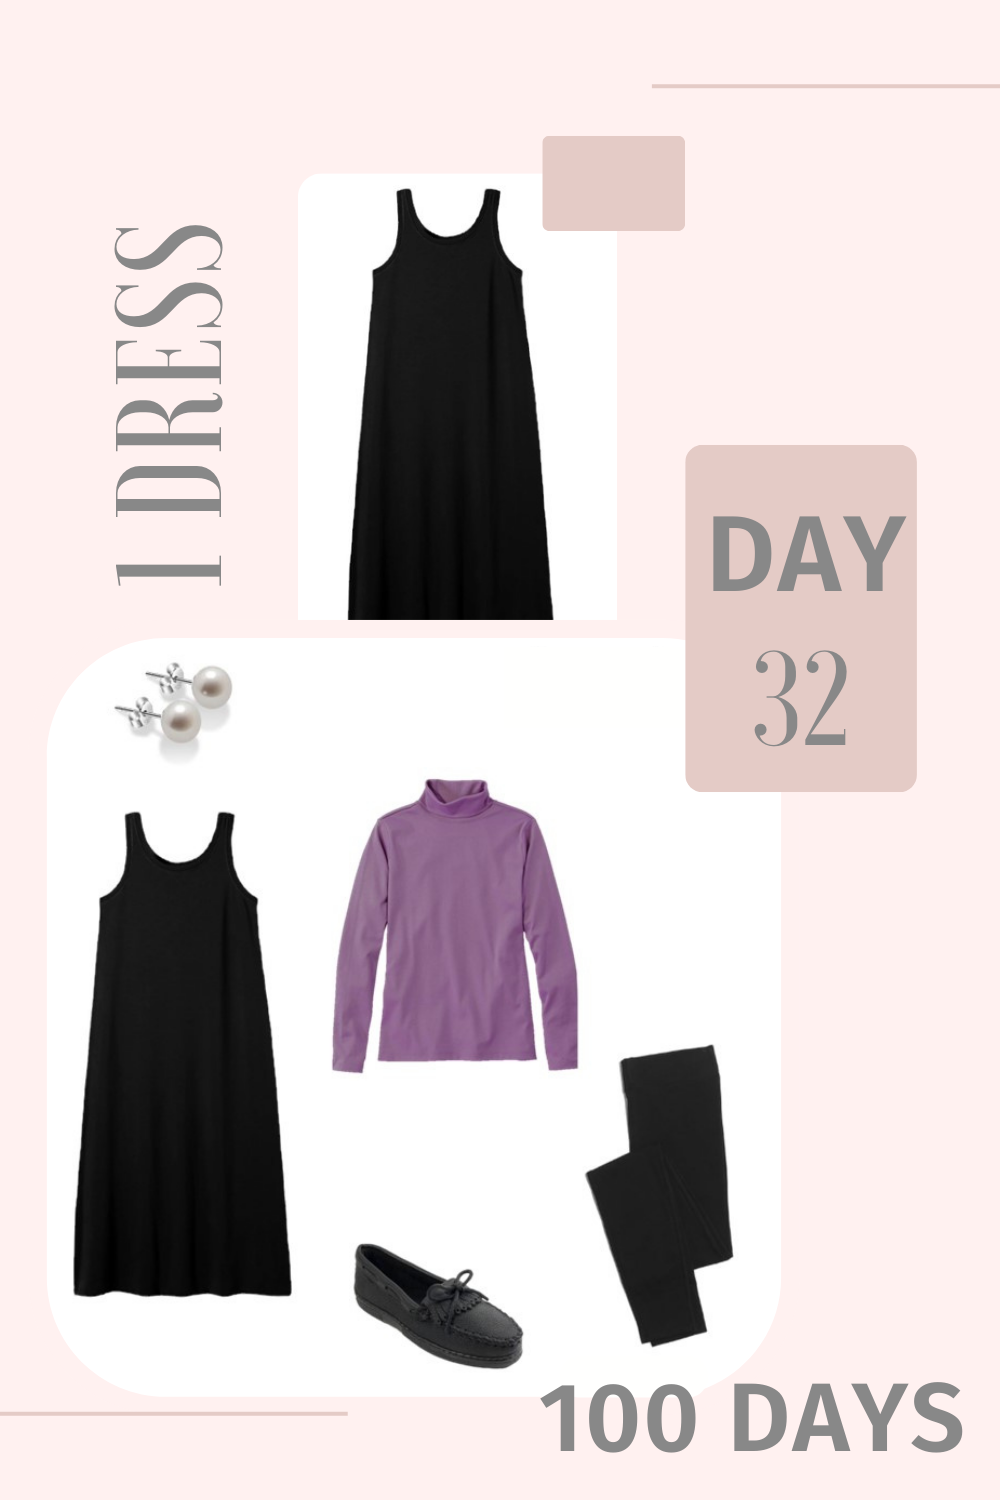 1 Dress 100 Days - Day 32